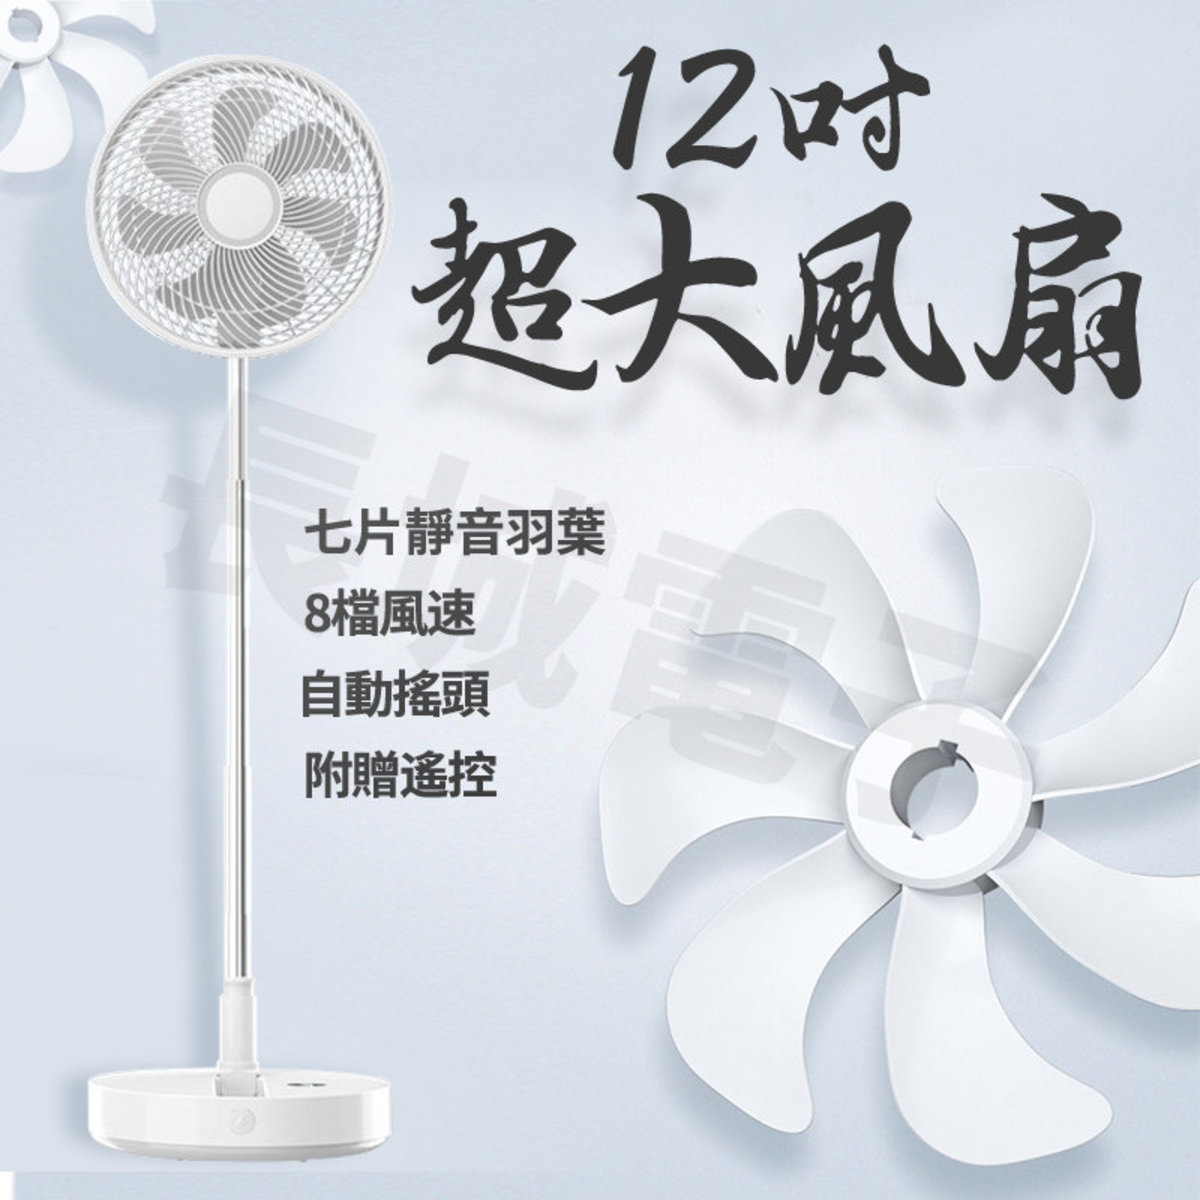 長城家品| 韓版12吋座地扇充電/濕電兩用免安裝摺疊收納附贈遙控8檔風速一鍵搖頭| 顏色: 白色| HKTVmall 香港最大網購平台